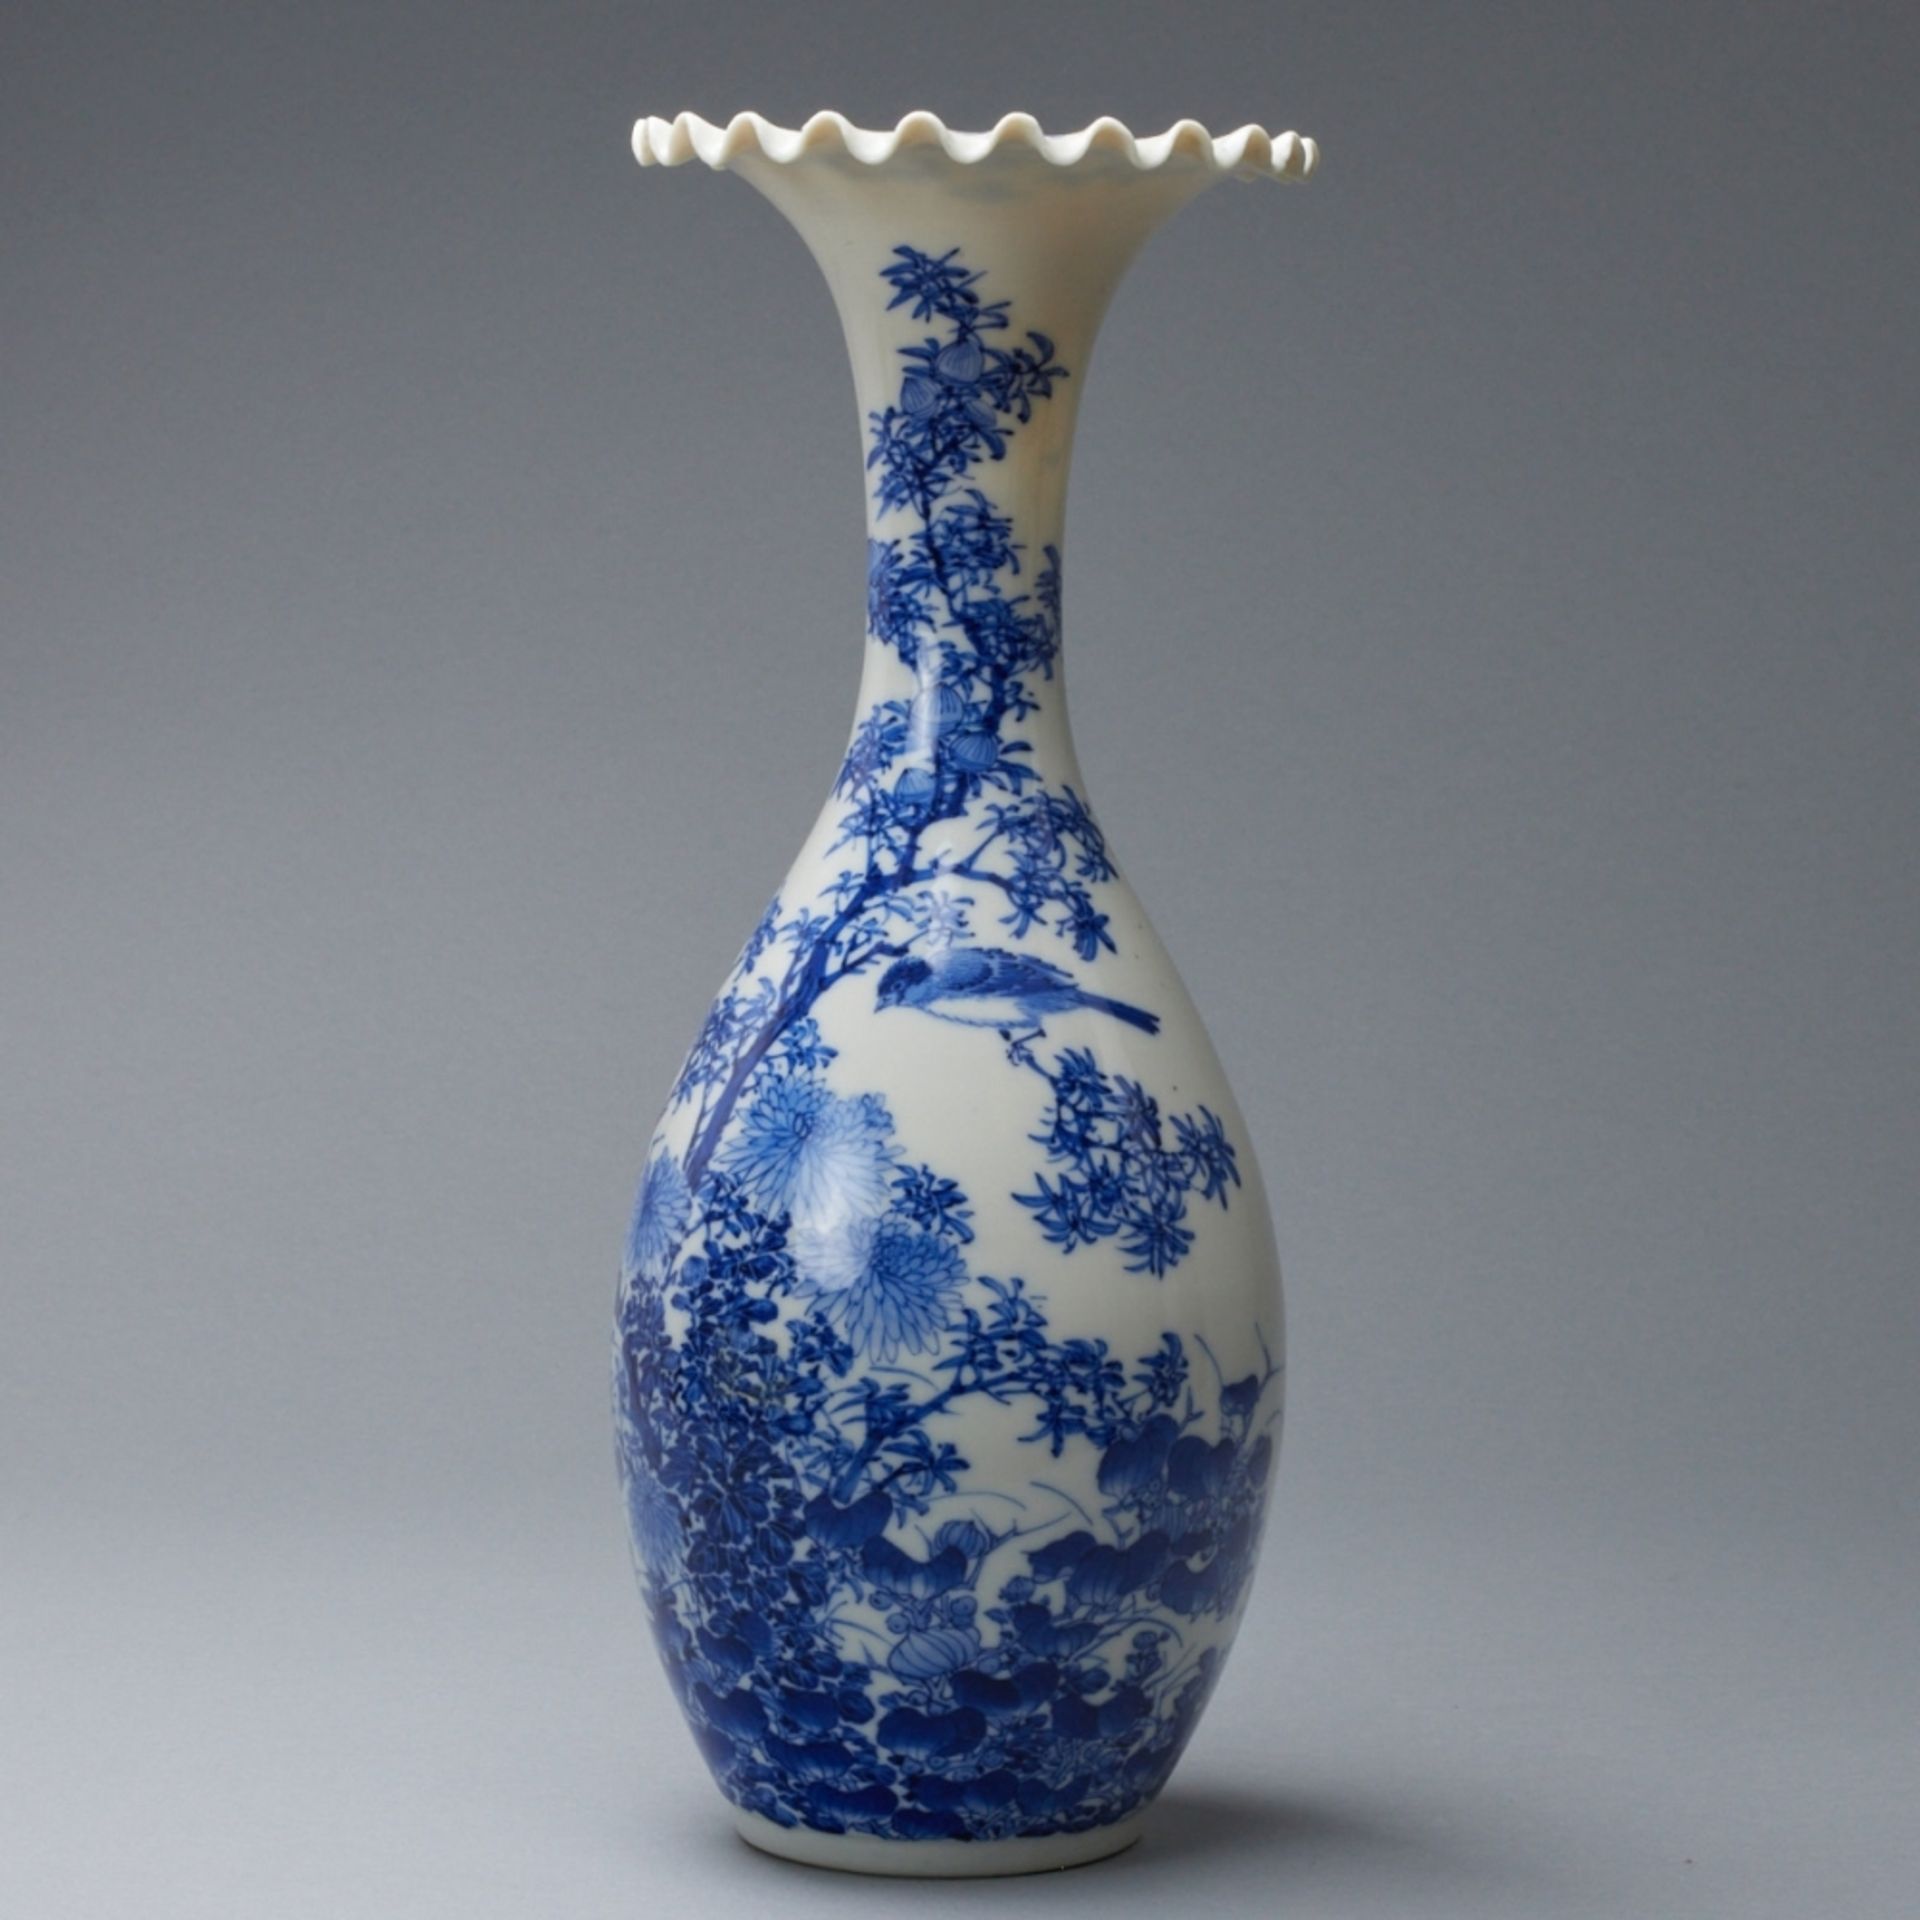 Vase mit Vogeldekor, Japan, wohl erste Hälfte 20. Jahrhundert - Bild 3 aus 4